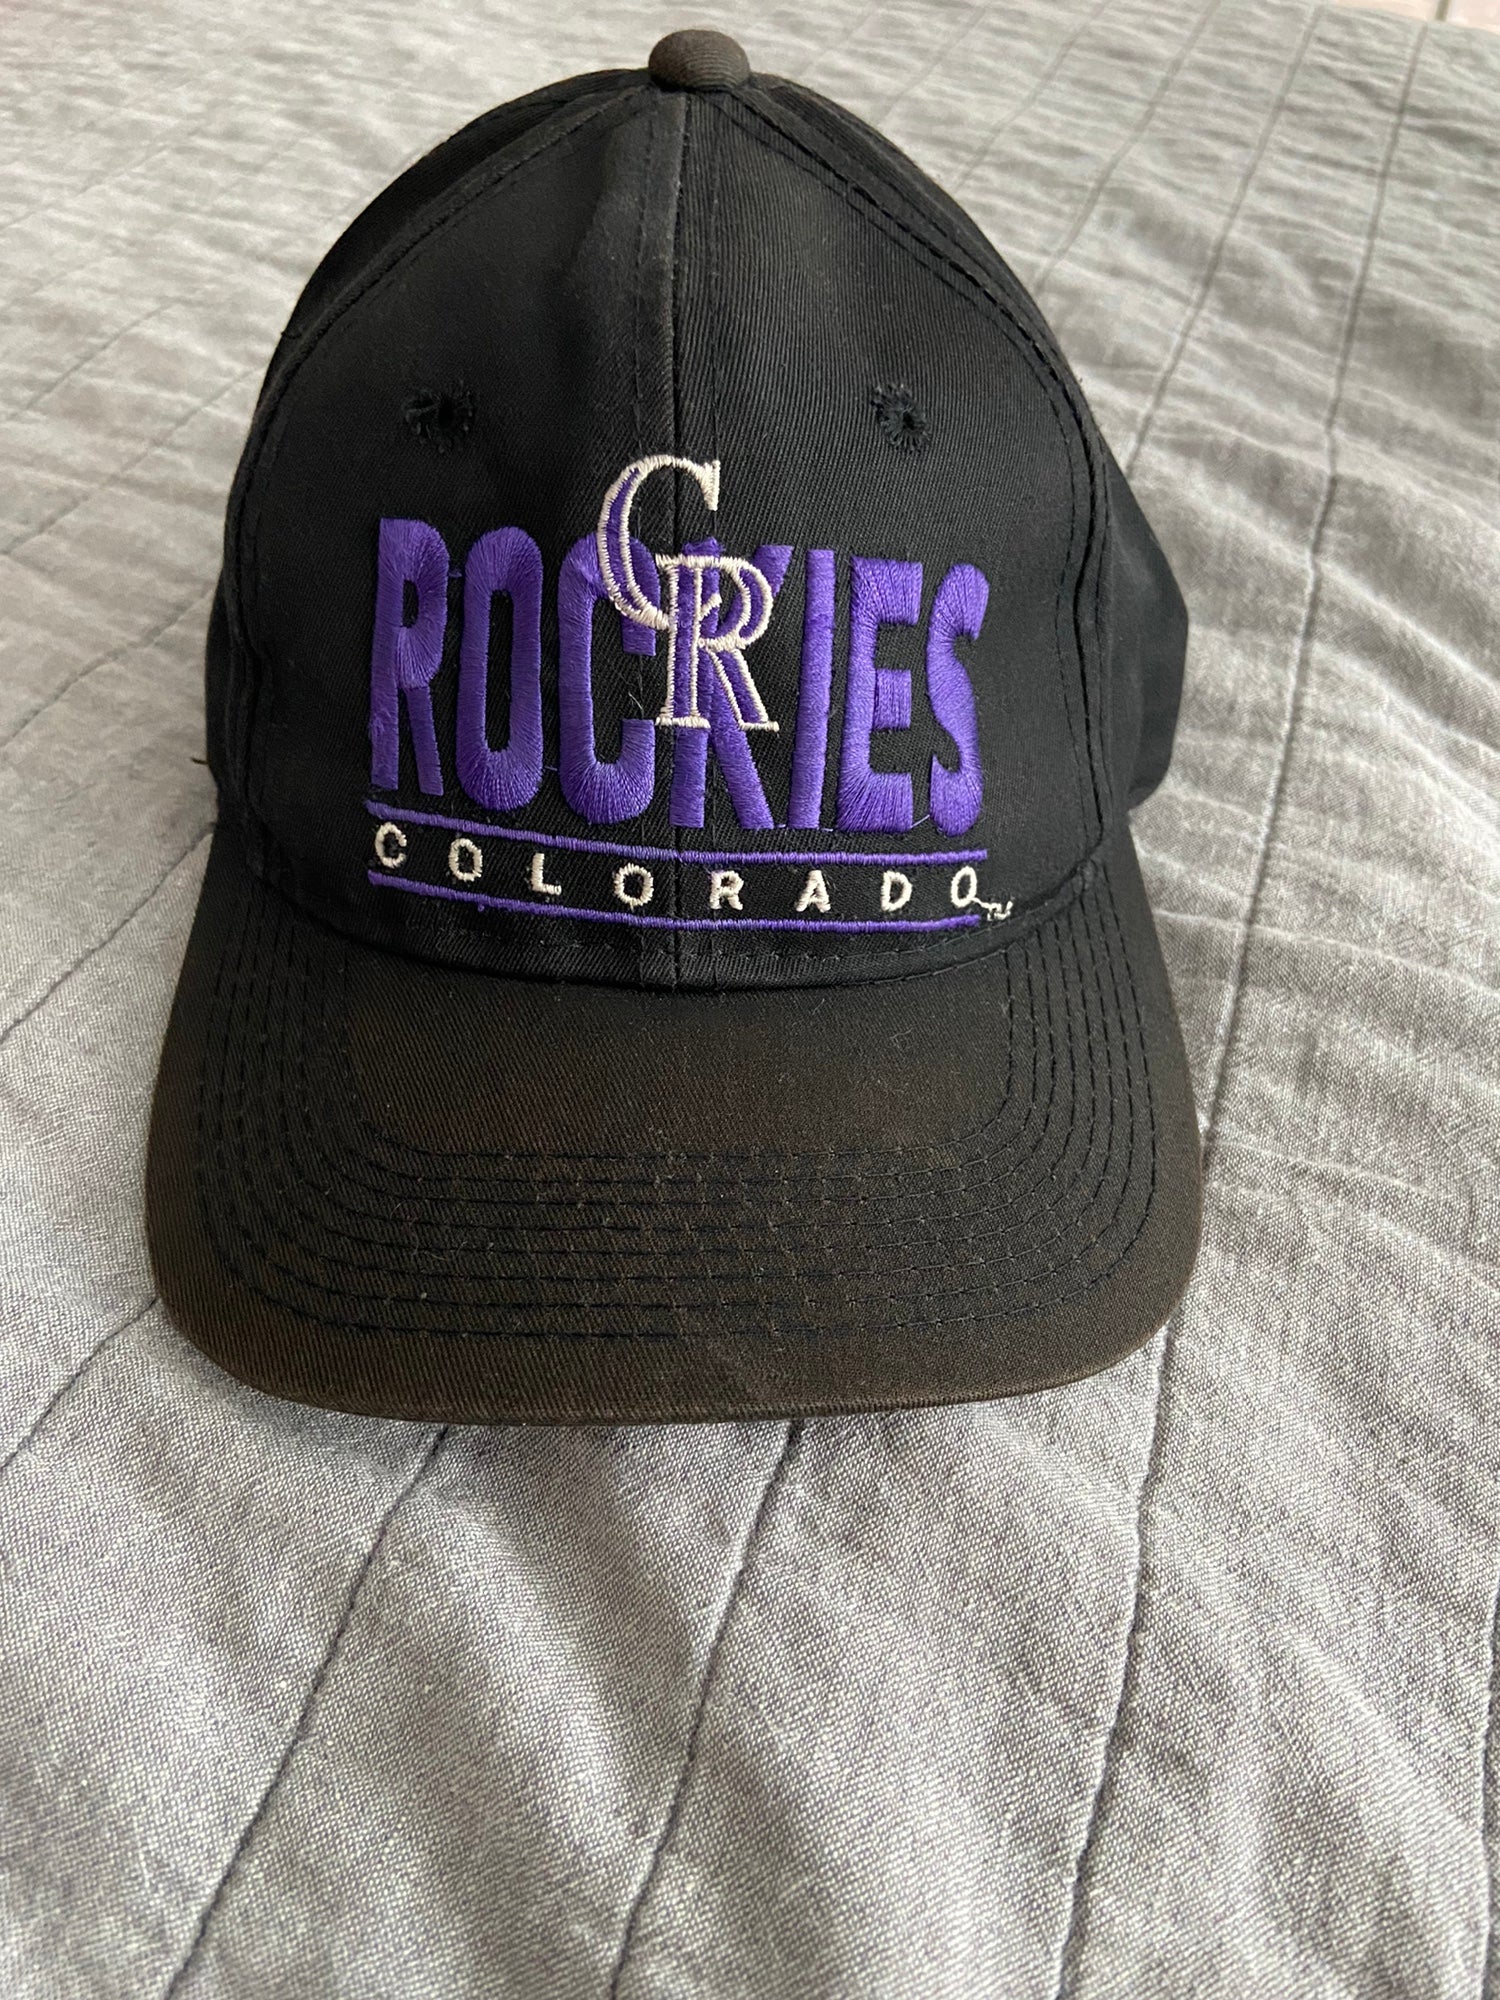 Vintage MLB Colorado Rockies Hat – Santiagosports